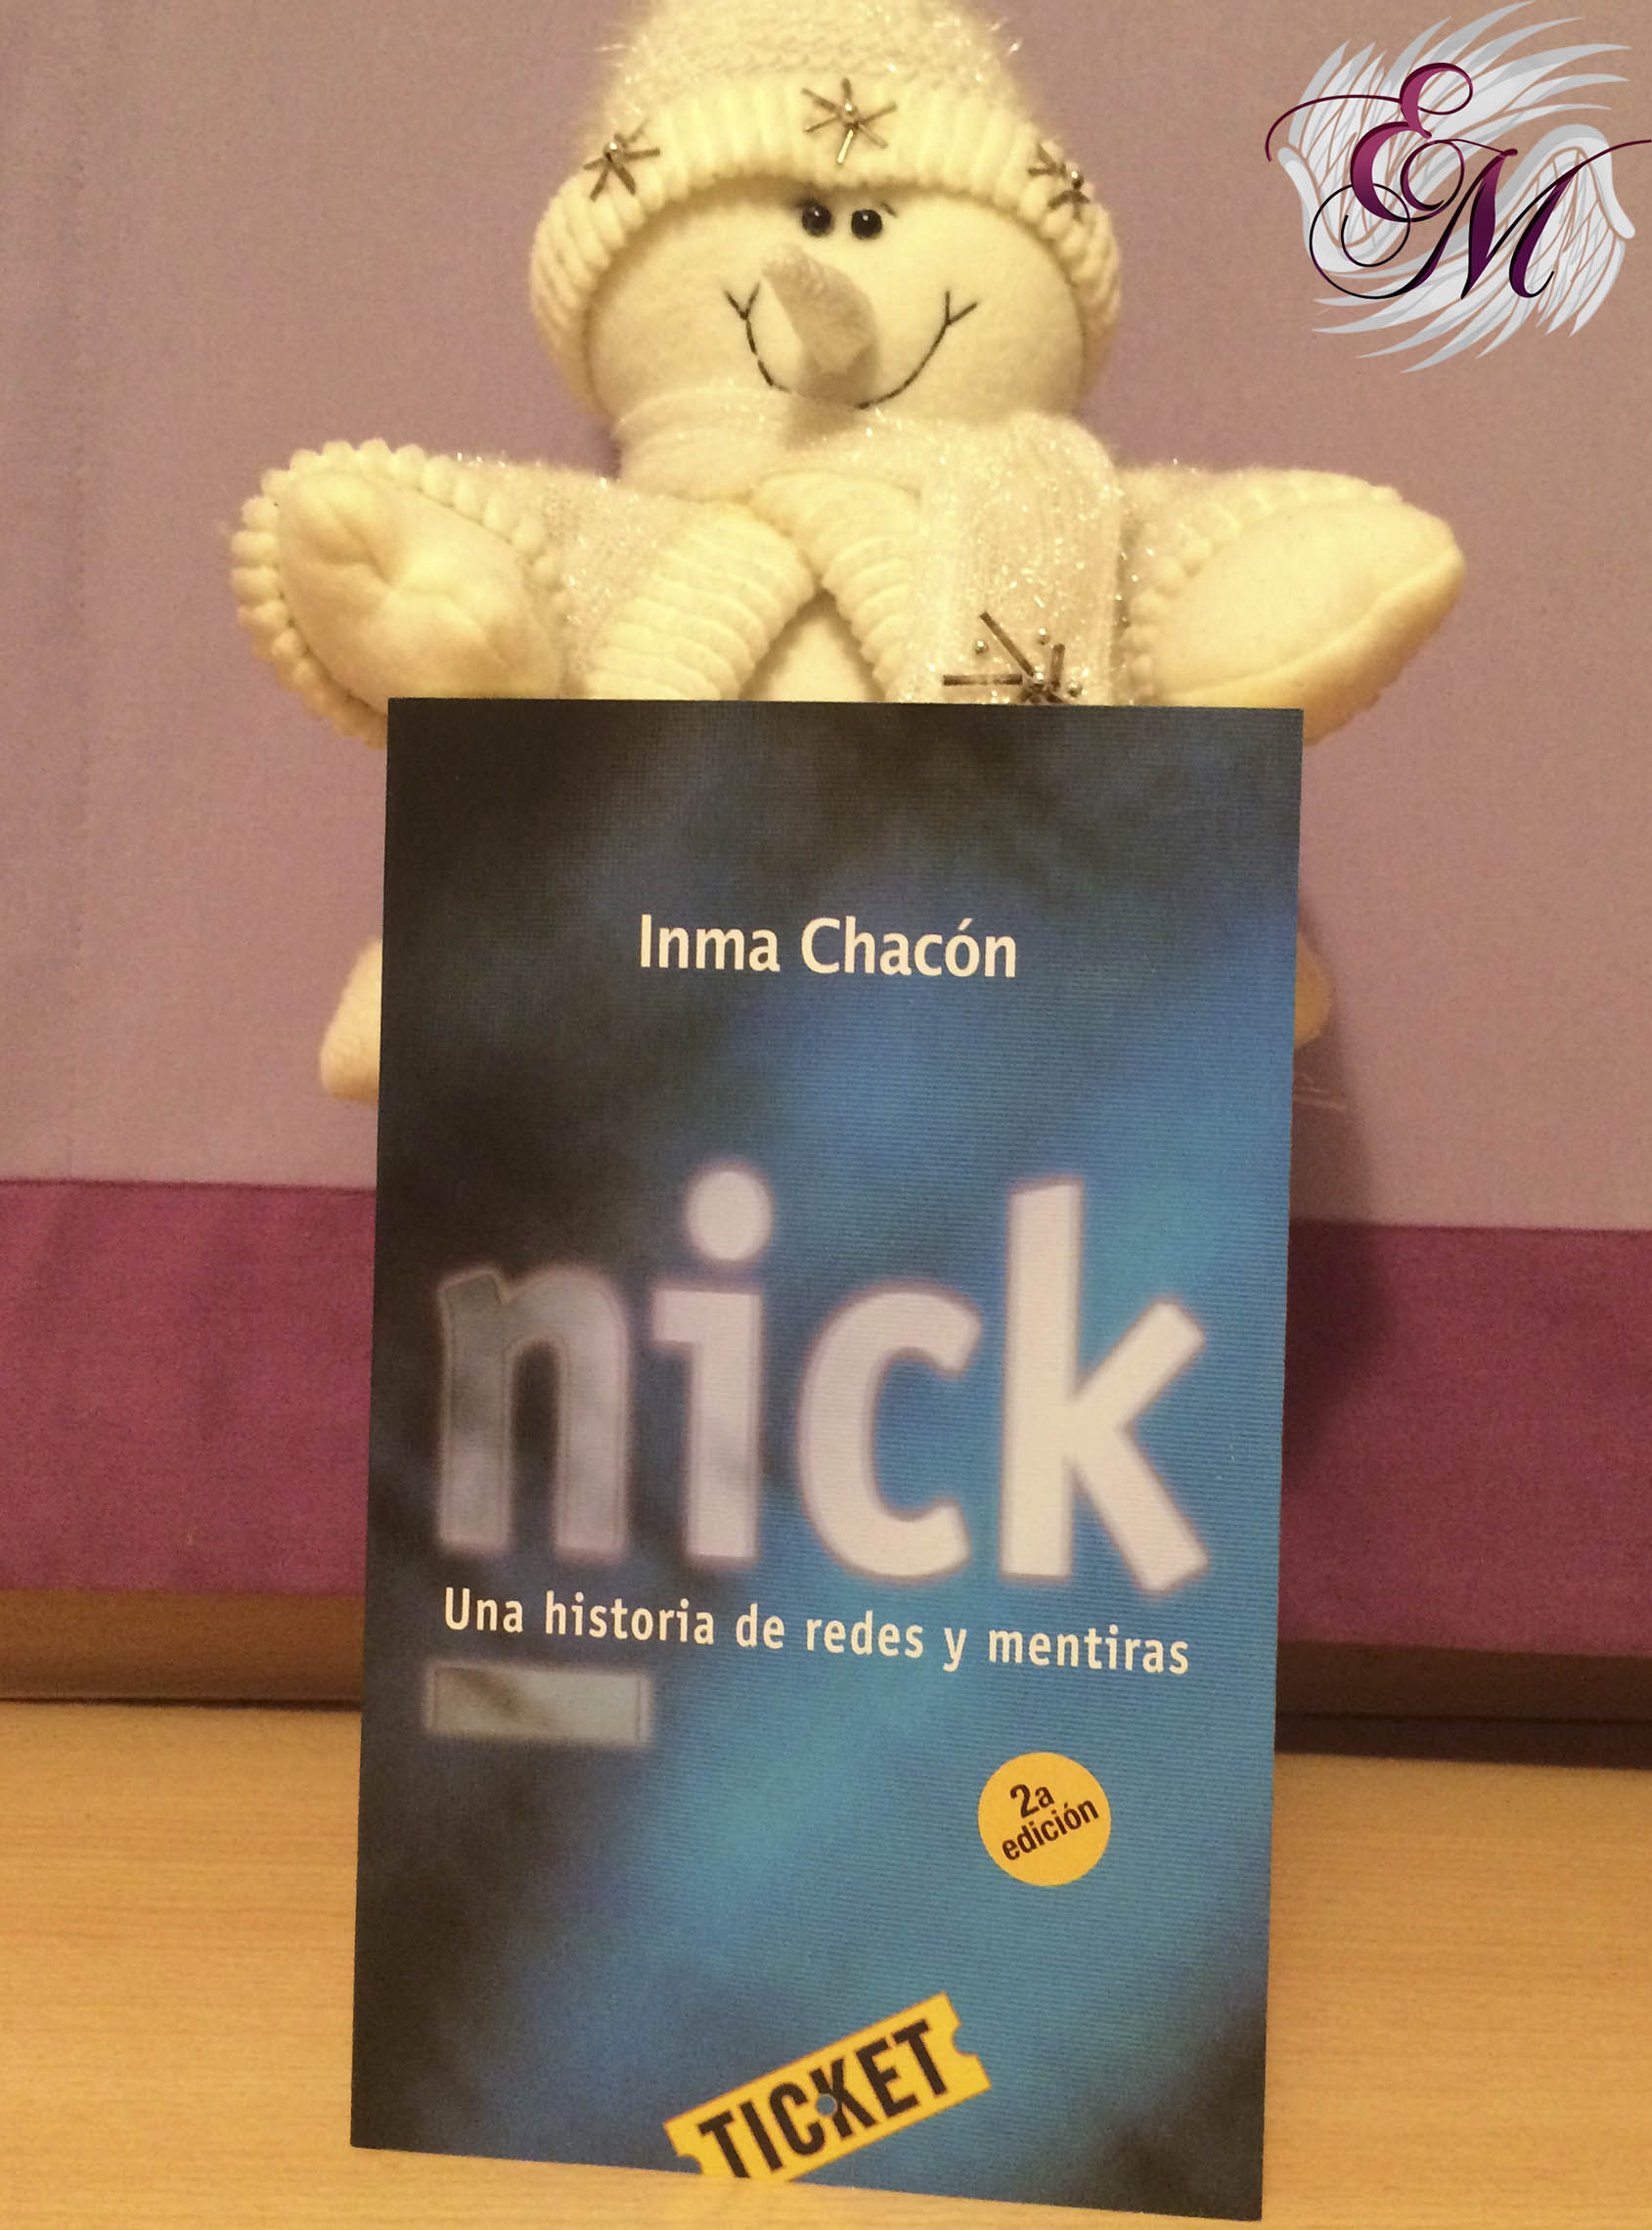 Nick, de Inma Chacón - Reseña